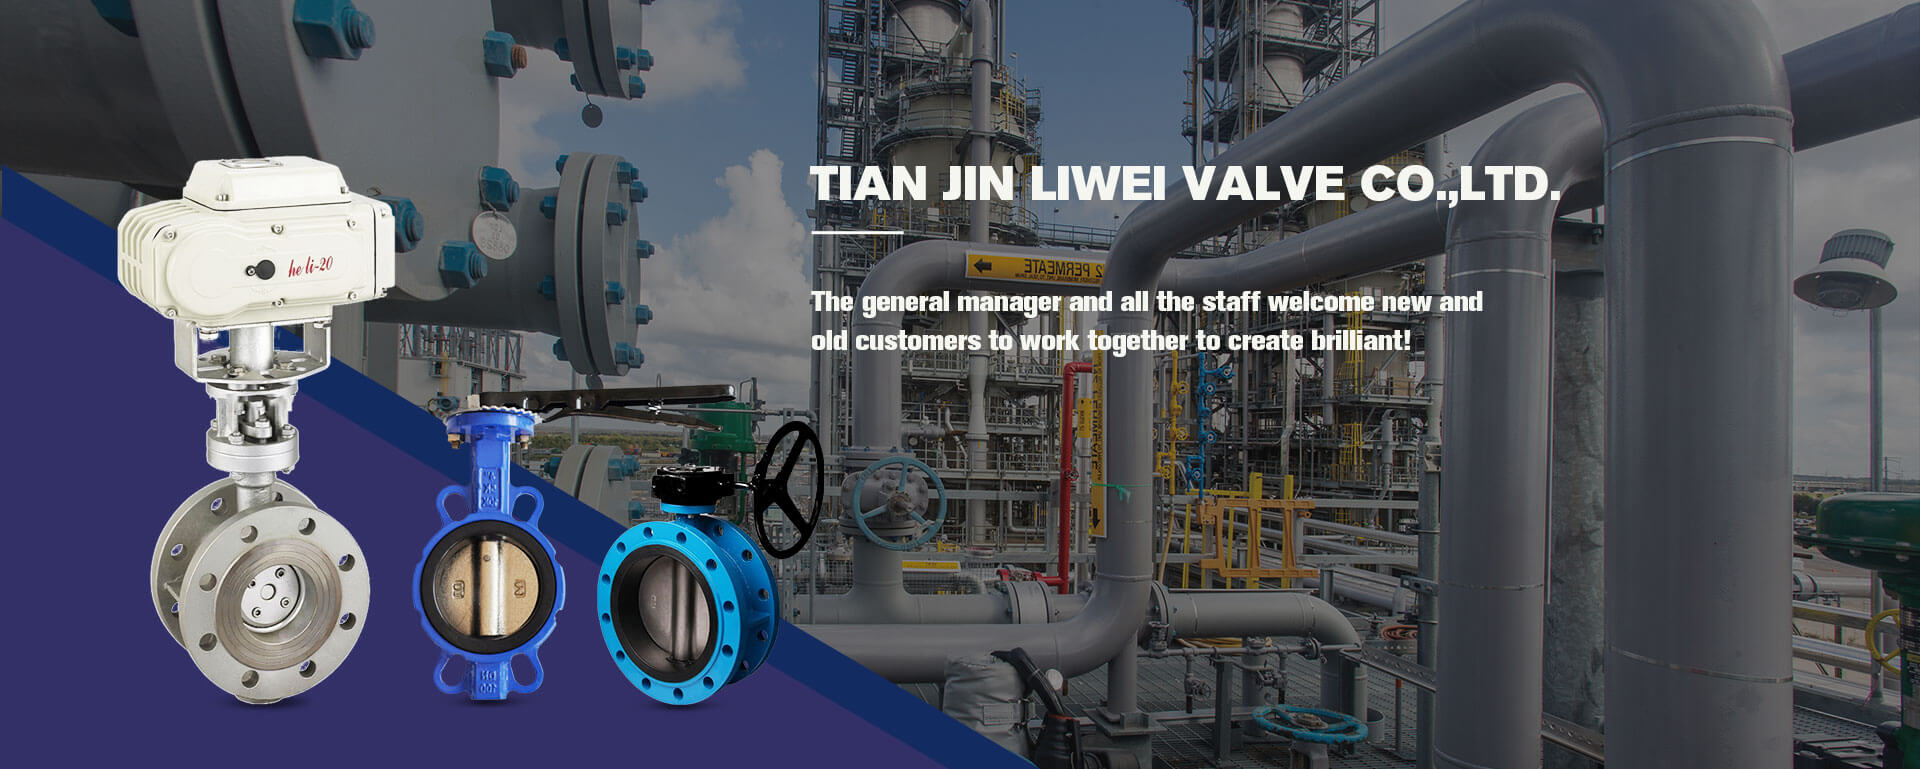 Tianjin LIWEI Valve Co., Ltd.